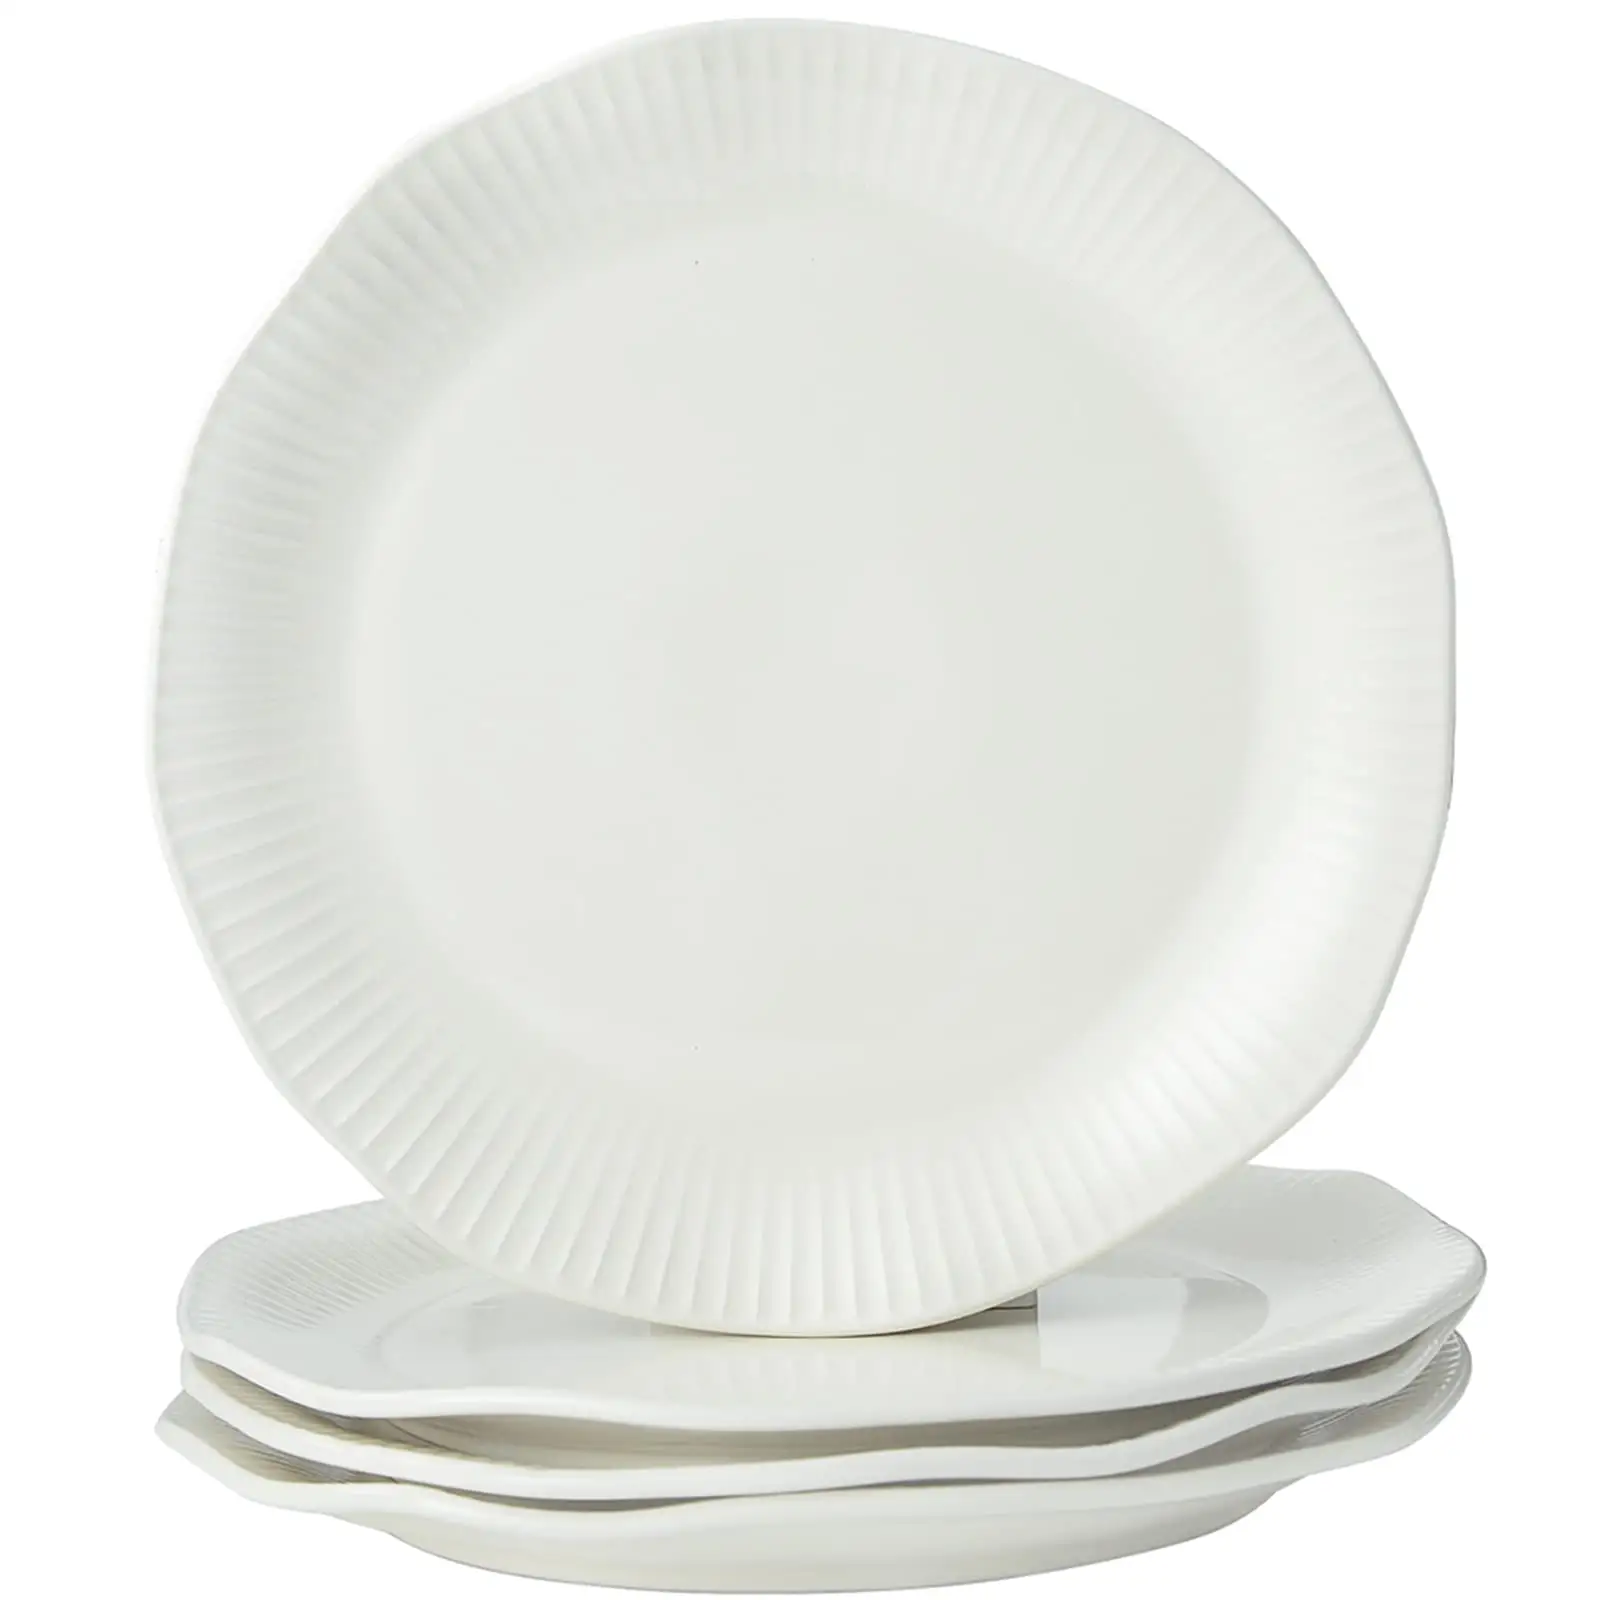 الجملة سعر السيراميك لوحات مجموعات من أواني الطعام الأبيض الأواني الفخارية مطعم فندق طاولات العشاء